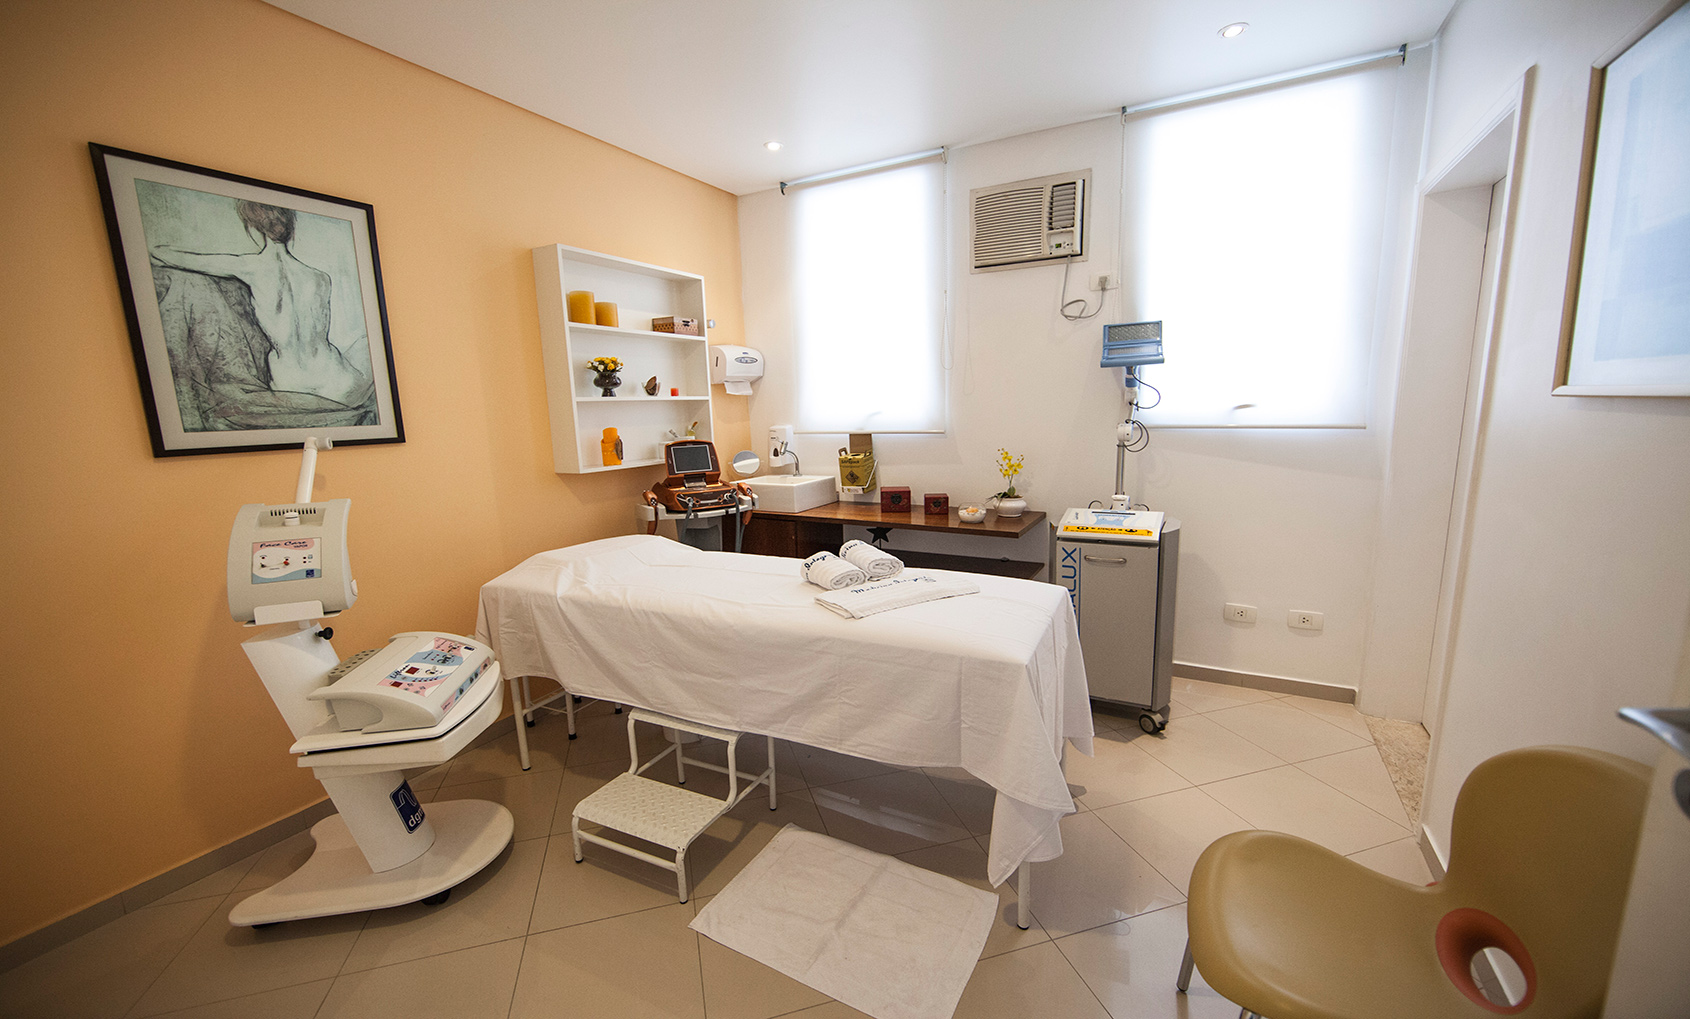 Sala de Fisioterapia Dermato-funcional - Tratamentos Faciais